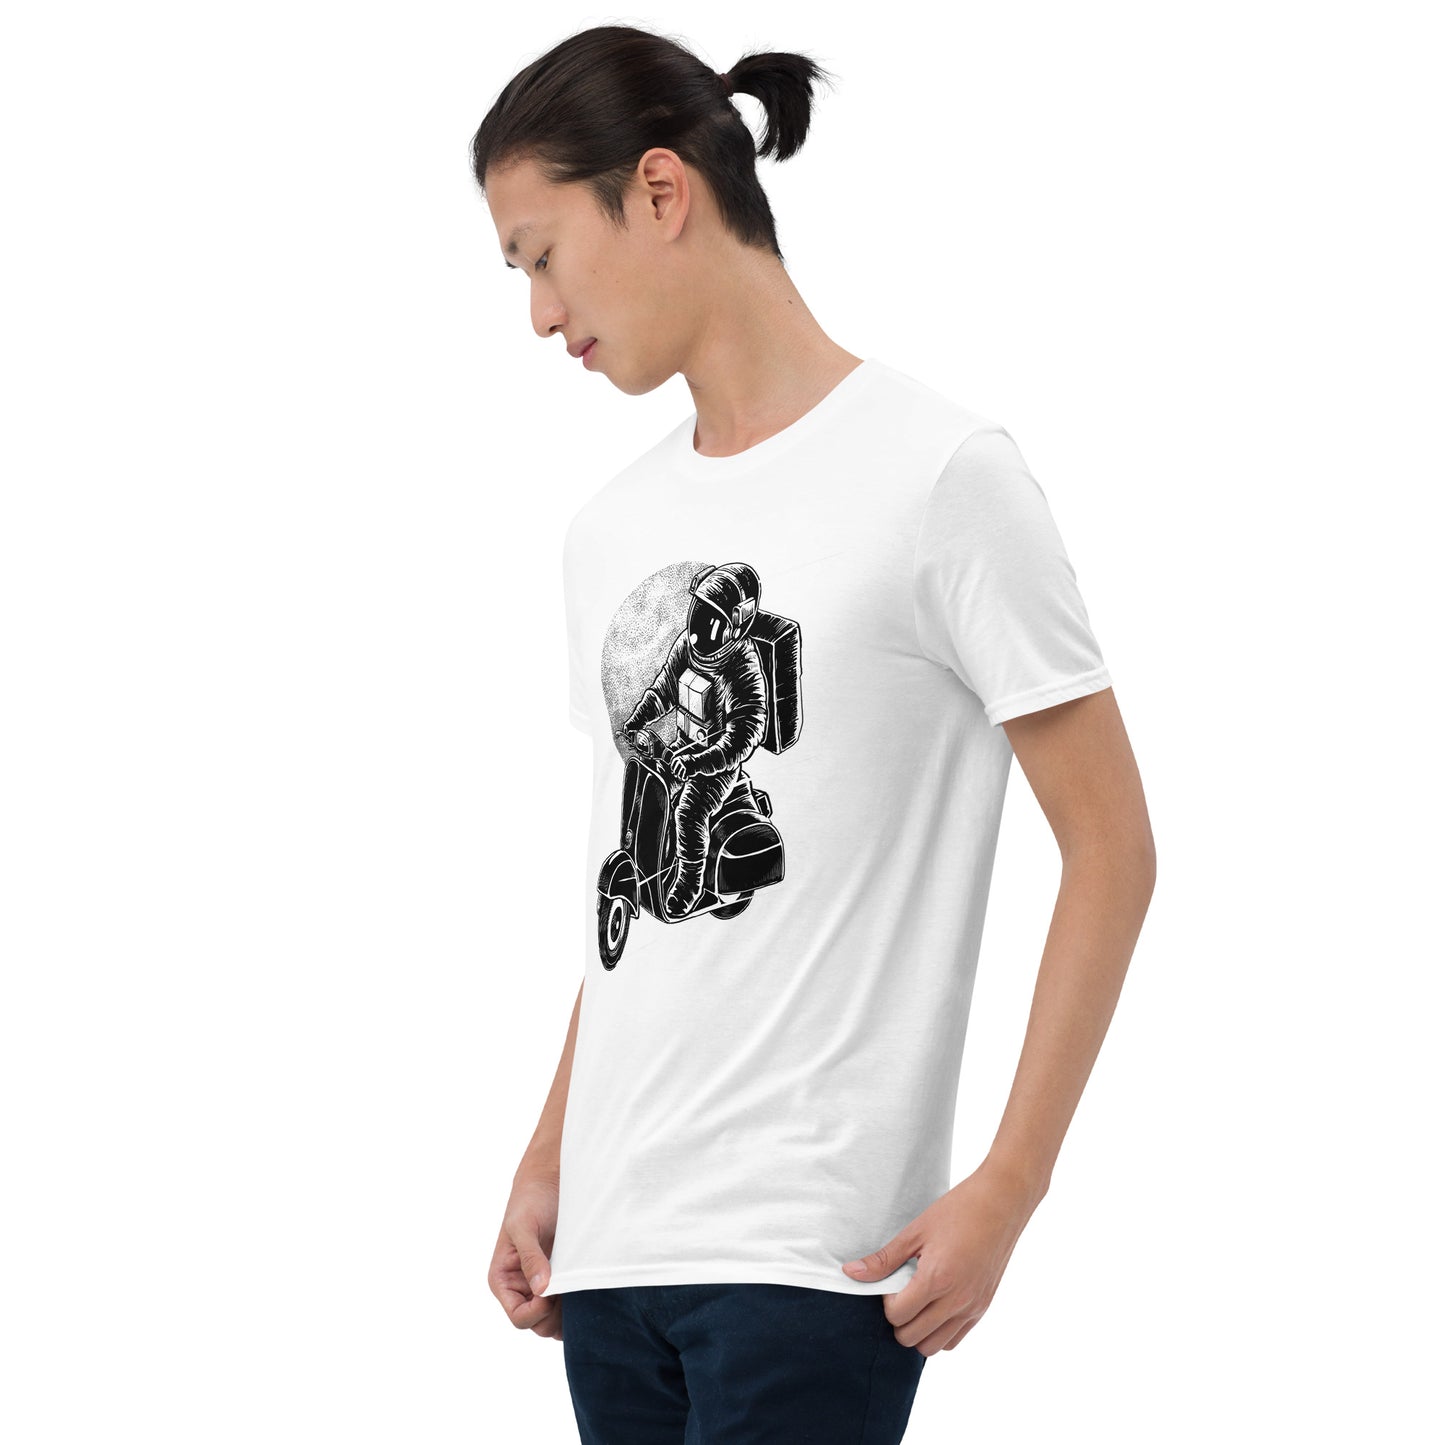 Traverser Gildan Short-Sleeve Unisex T-Shirt